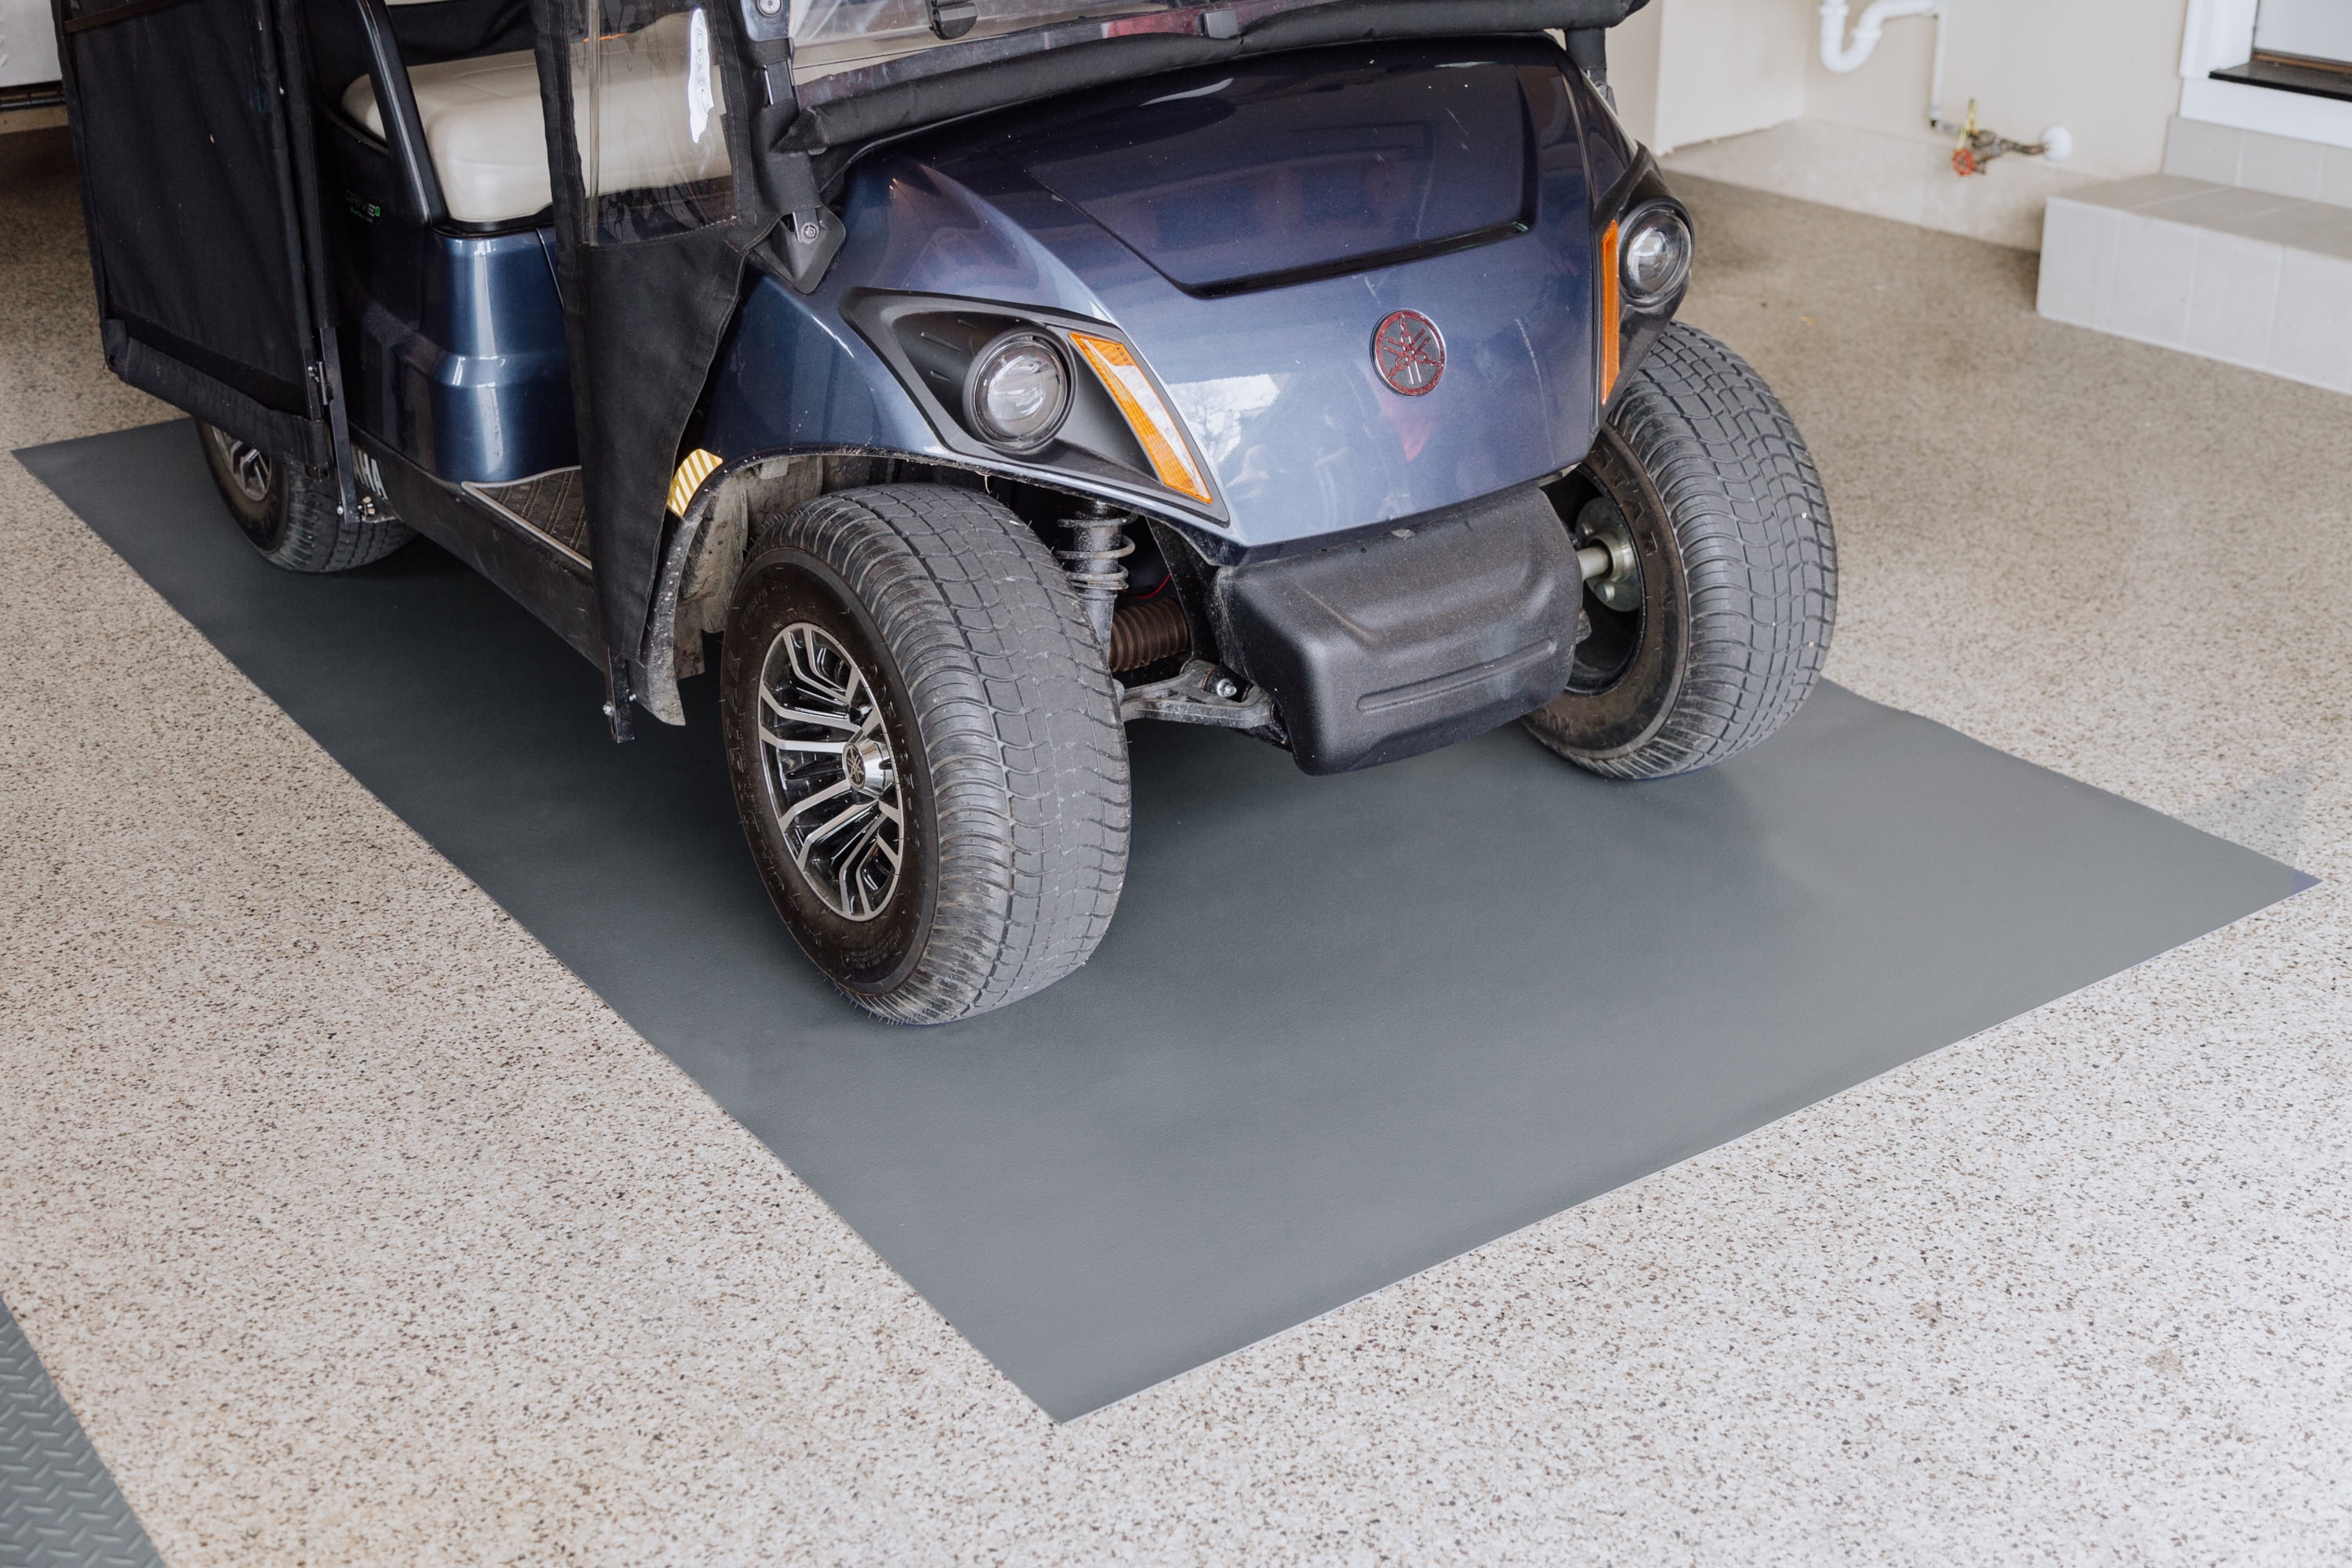 Garage Floor Mat 6.6x8.5 Feet Absorb Liquid Golf Cart Mat for Garage  Waterproof Rubber Backing Layer Garage Mats for Under Car Protects Floor  from